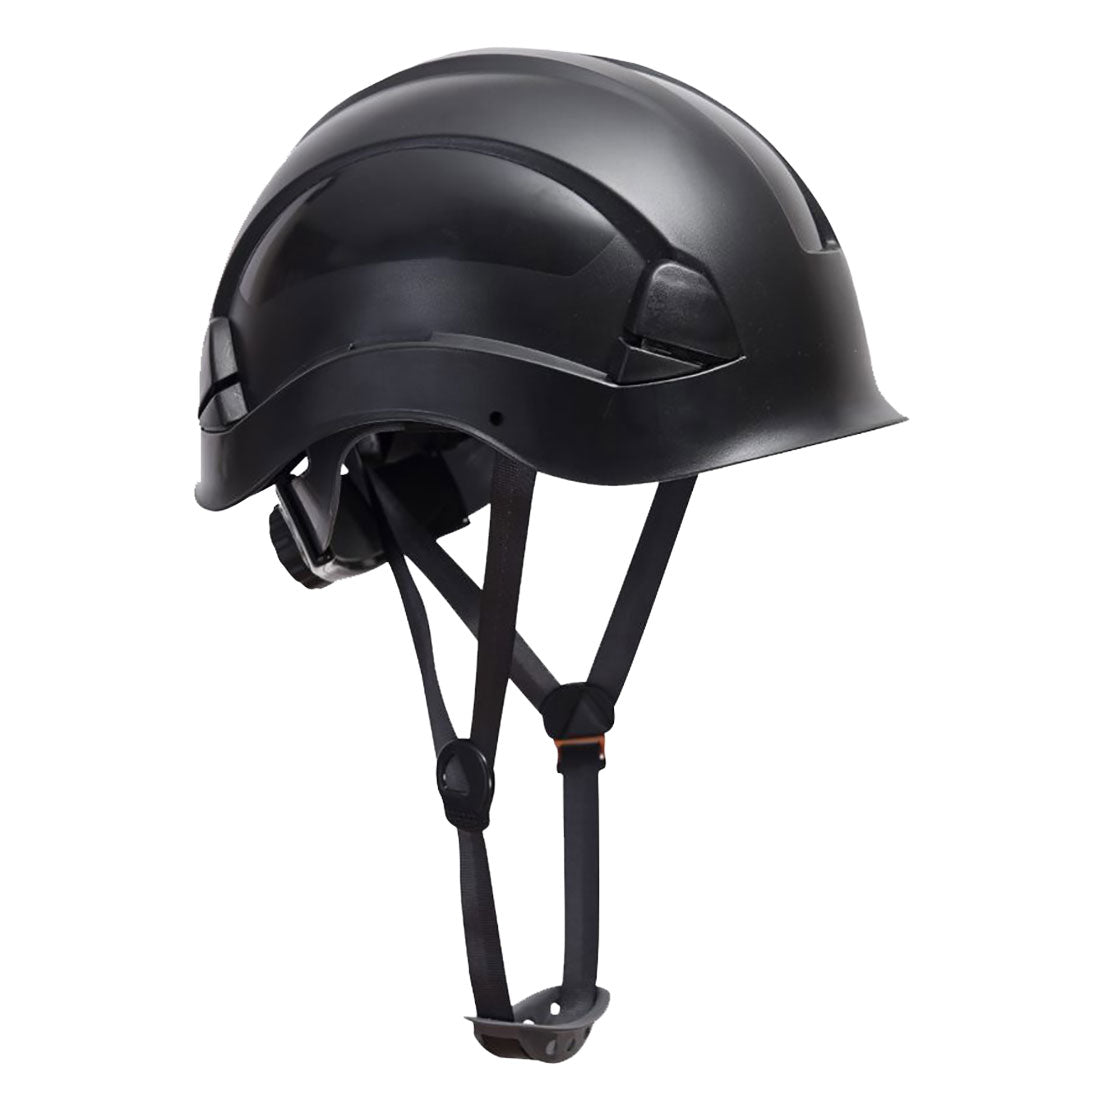 PS53 - Endurance Helm für Höhenarbeiten